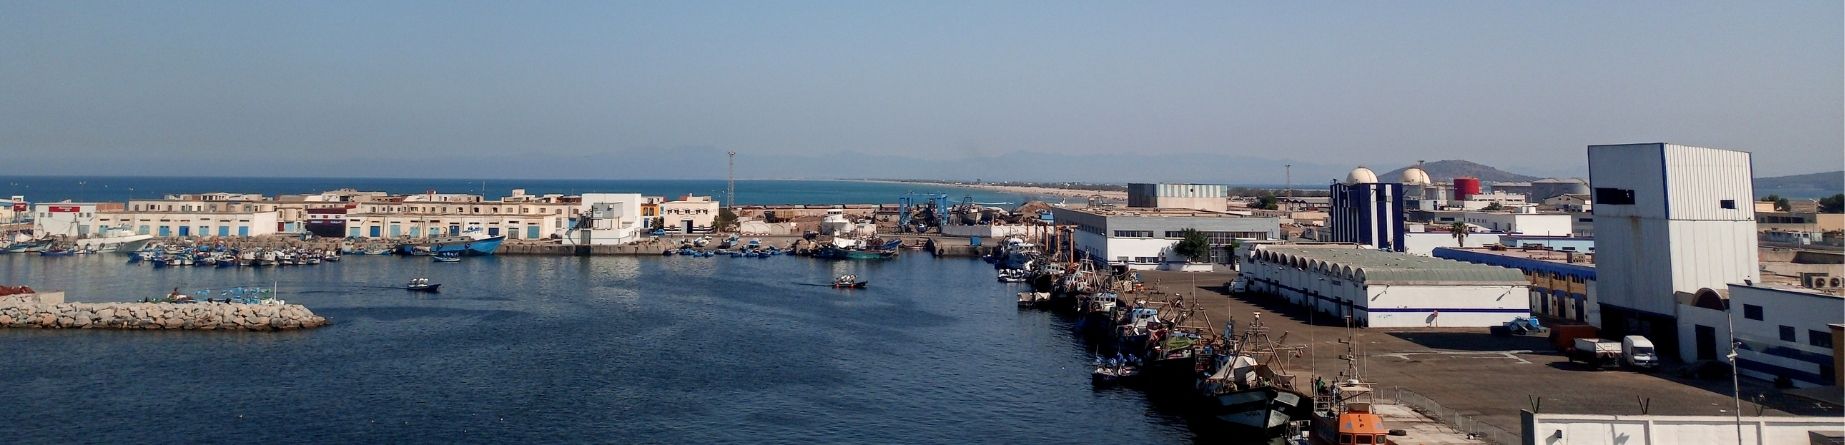 Image ressource du port de destination Nador pour l'itinéraire du ferry Sète - Nador